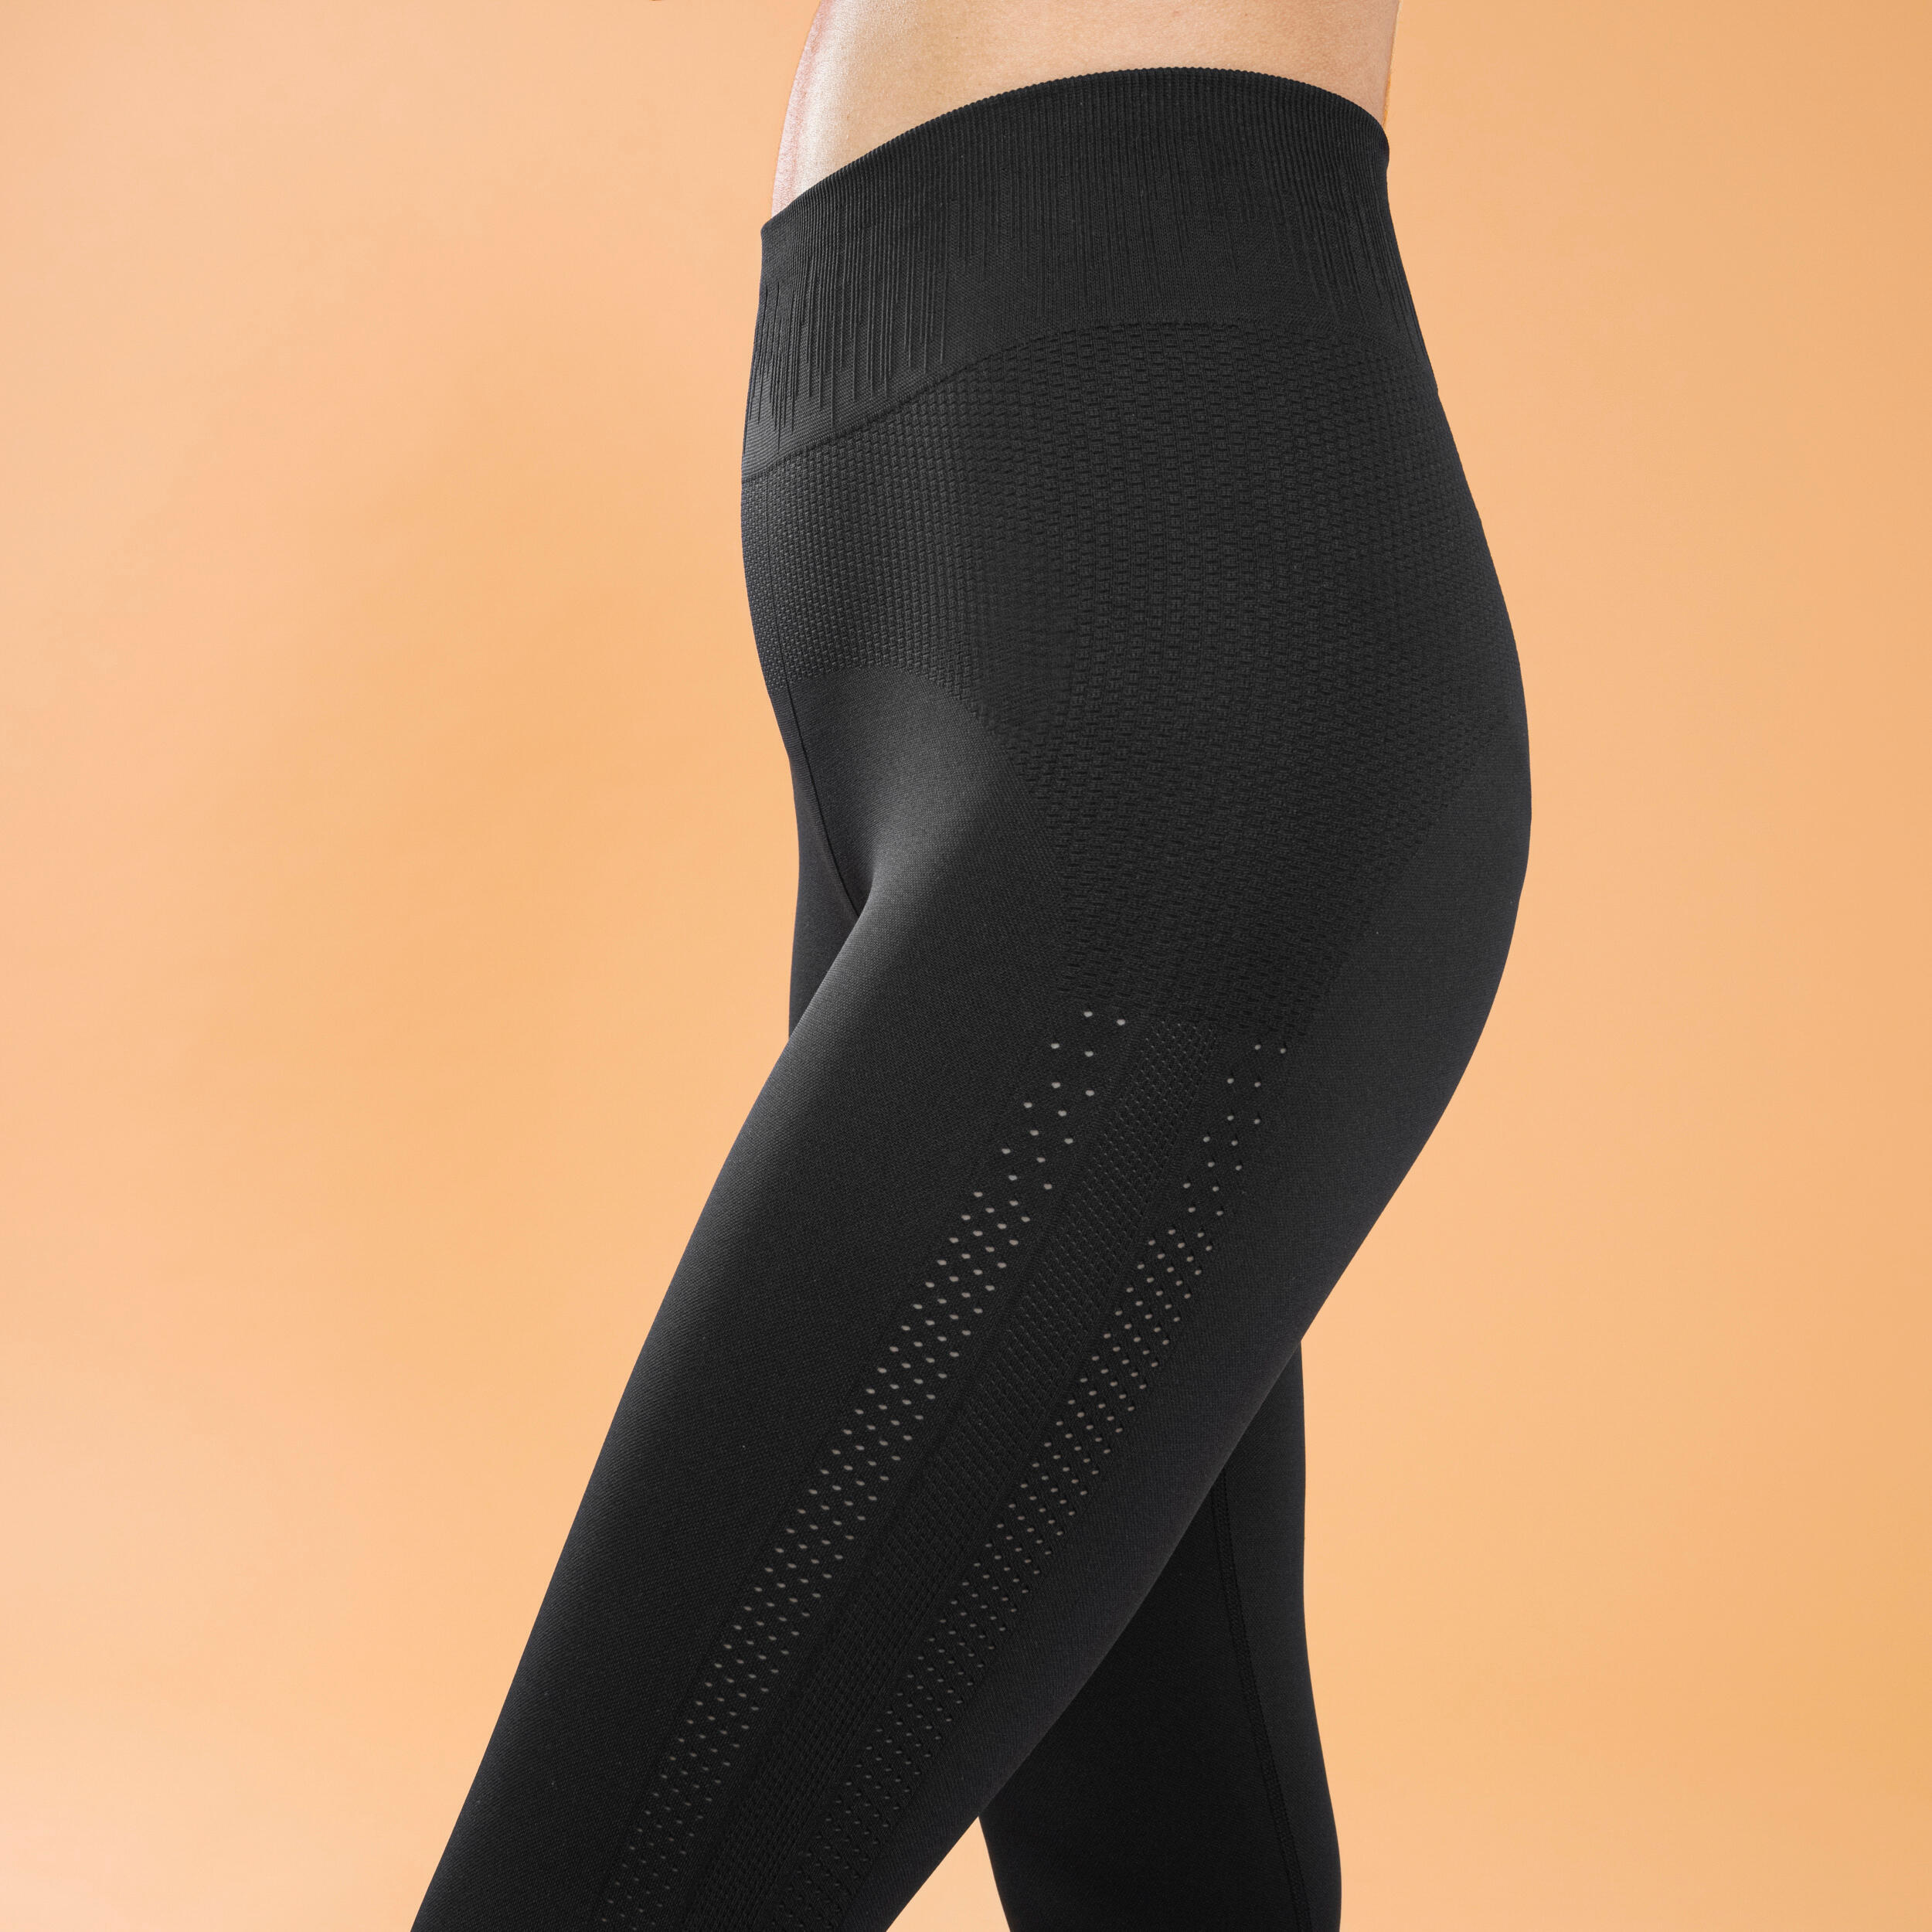 Super Soft 7/8 Yoga Leggings - Black Spray Dye Print, Women's Leggings